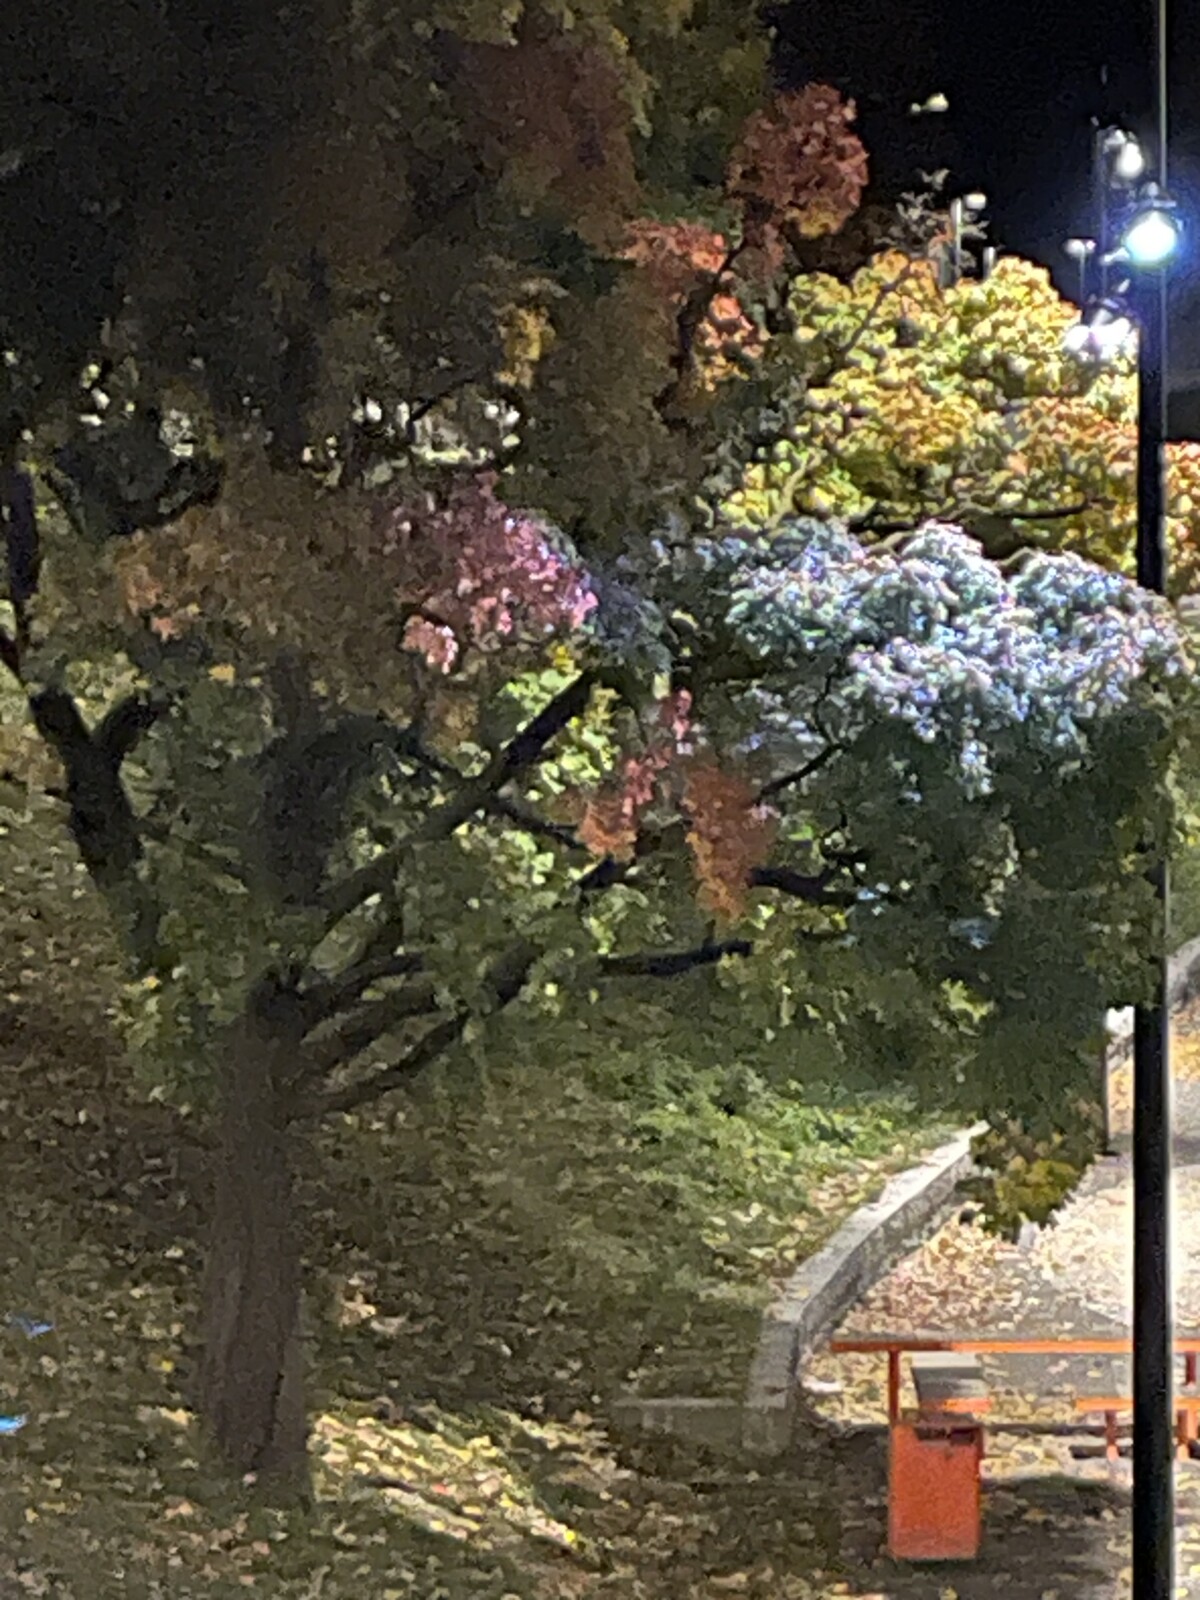 Et vakkert belyst høst tre i Oslo en oktoberkveld er mer enn nok til å glede livsnyteren i meg. Det gjelder å finne nye spor når livet sporer av. Men innimellom blir det mørkt. Skikkelig mørkt. 